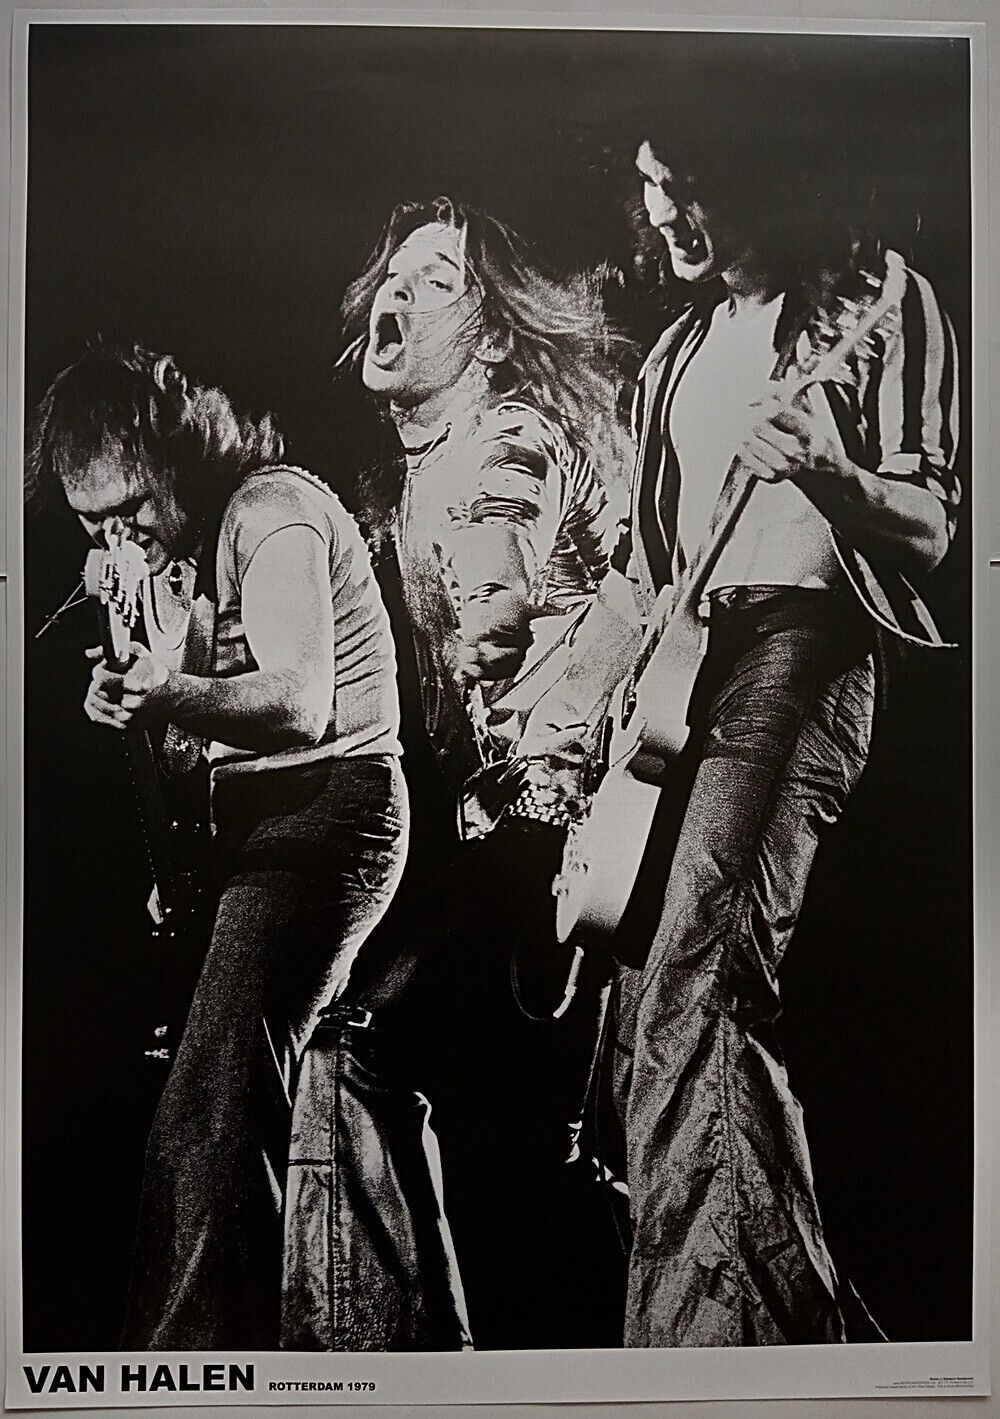 VAN HALEN Poster David Lee Roth, Eddie Van Halen On Stage, Rotterdam 1979